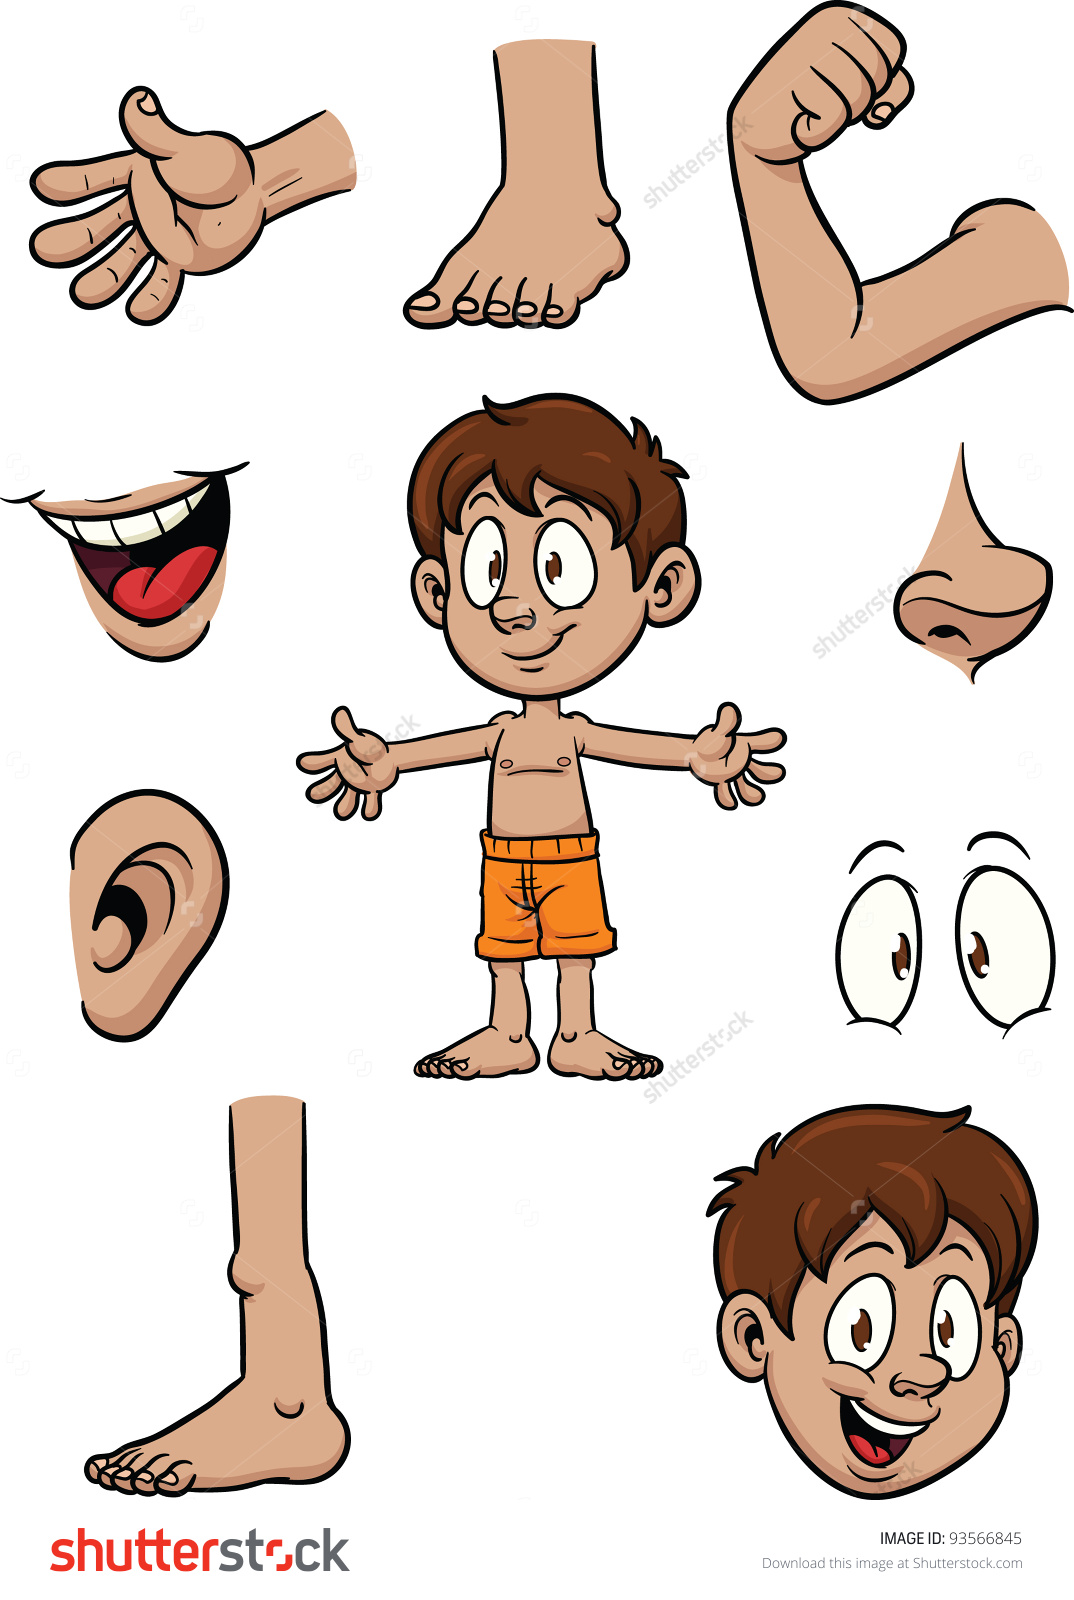 cartoon kid and body parts